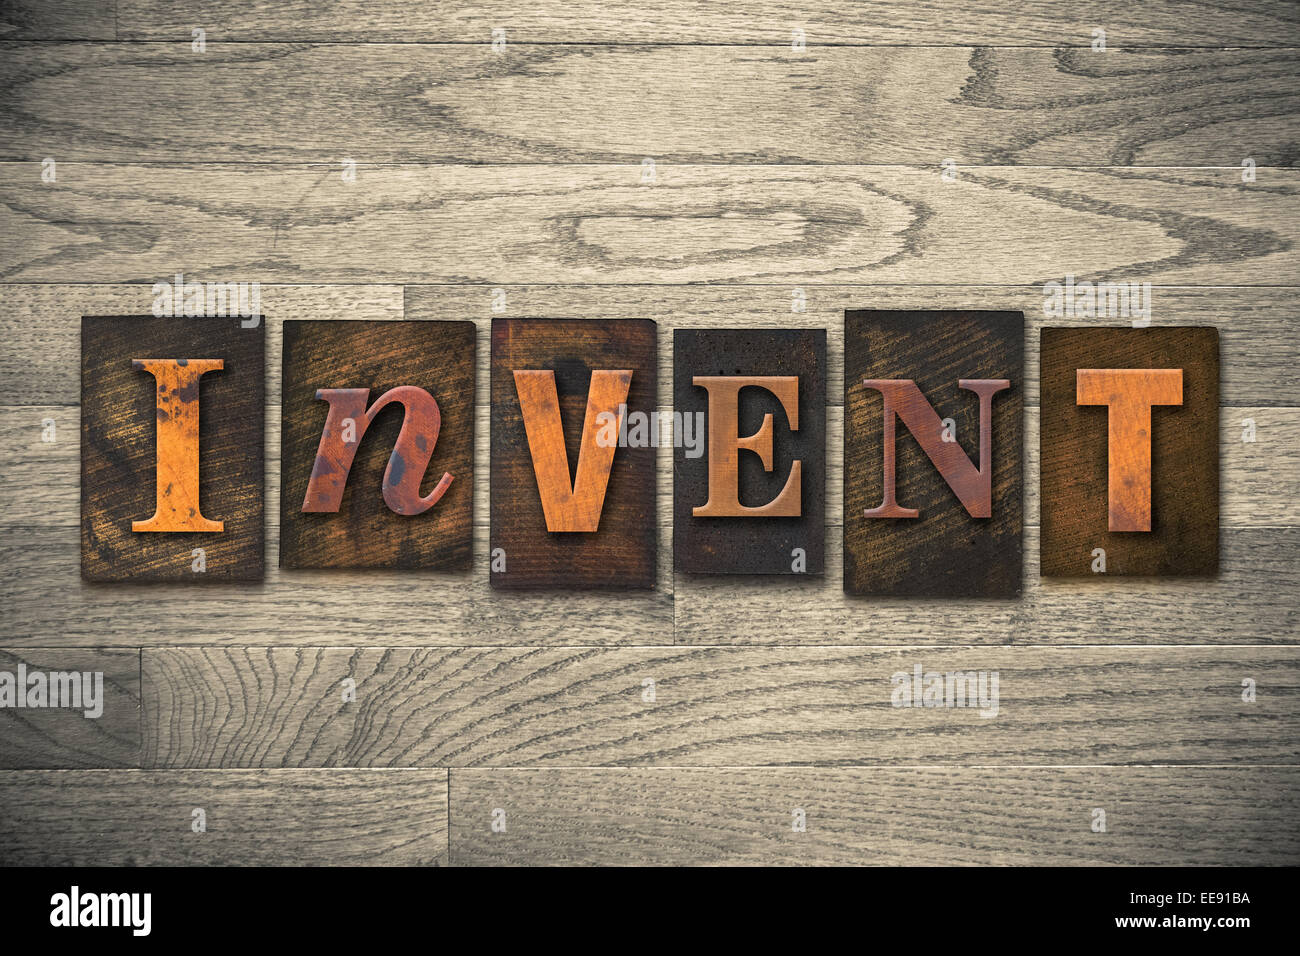 La palabra "inventar" escrito en tipografía de madera. Foto de stock